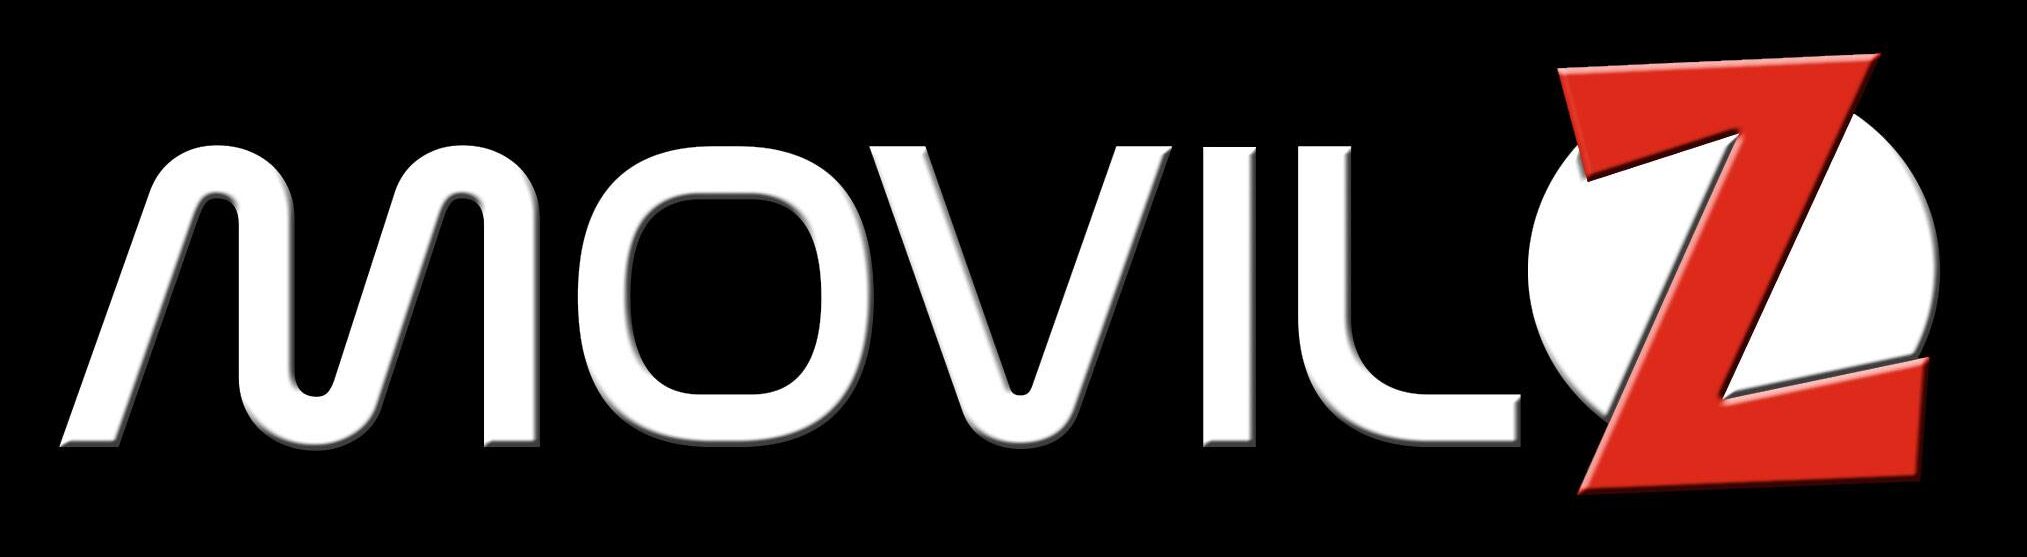 logotipo movil zeta 2